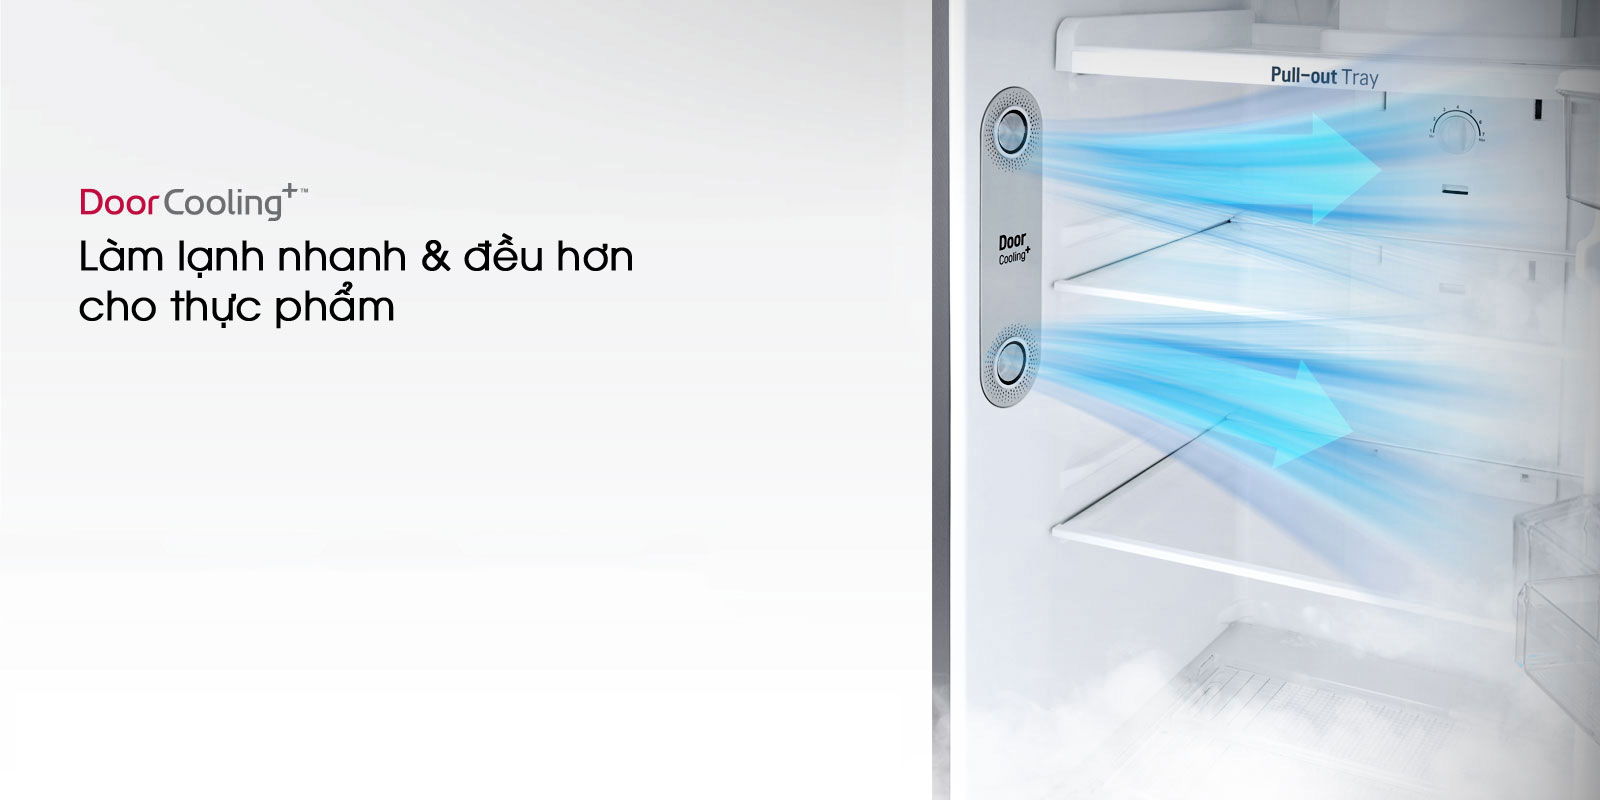 Làm lạnh nhanh hơn với công nghệ DoorCooling+ - Tủ lạnh LG Inverter 255 lít GN-M255BL